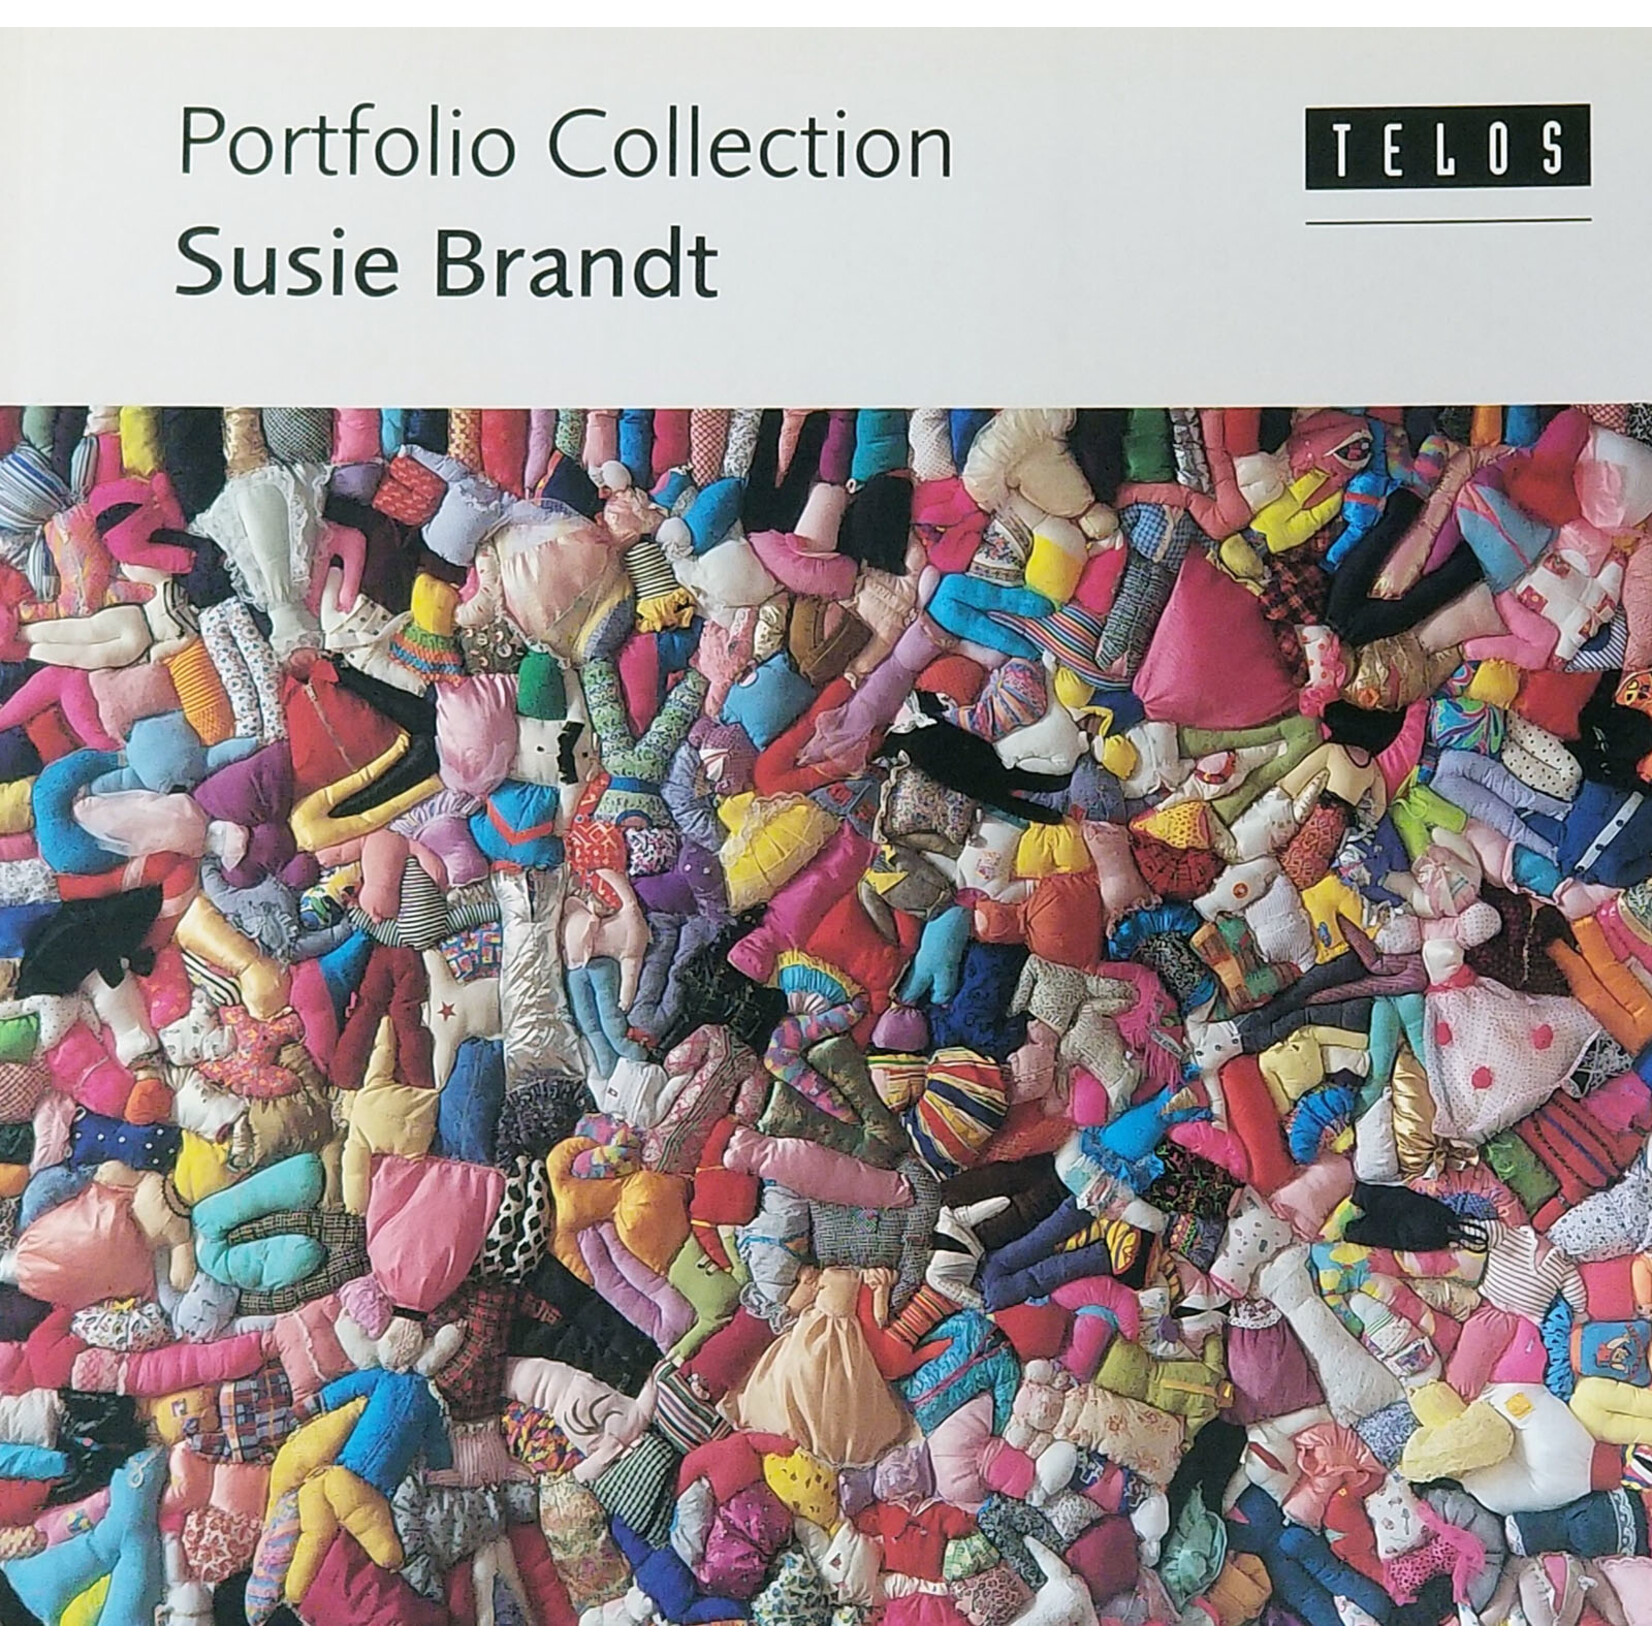 Portfolio Collection: Susie Brandt